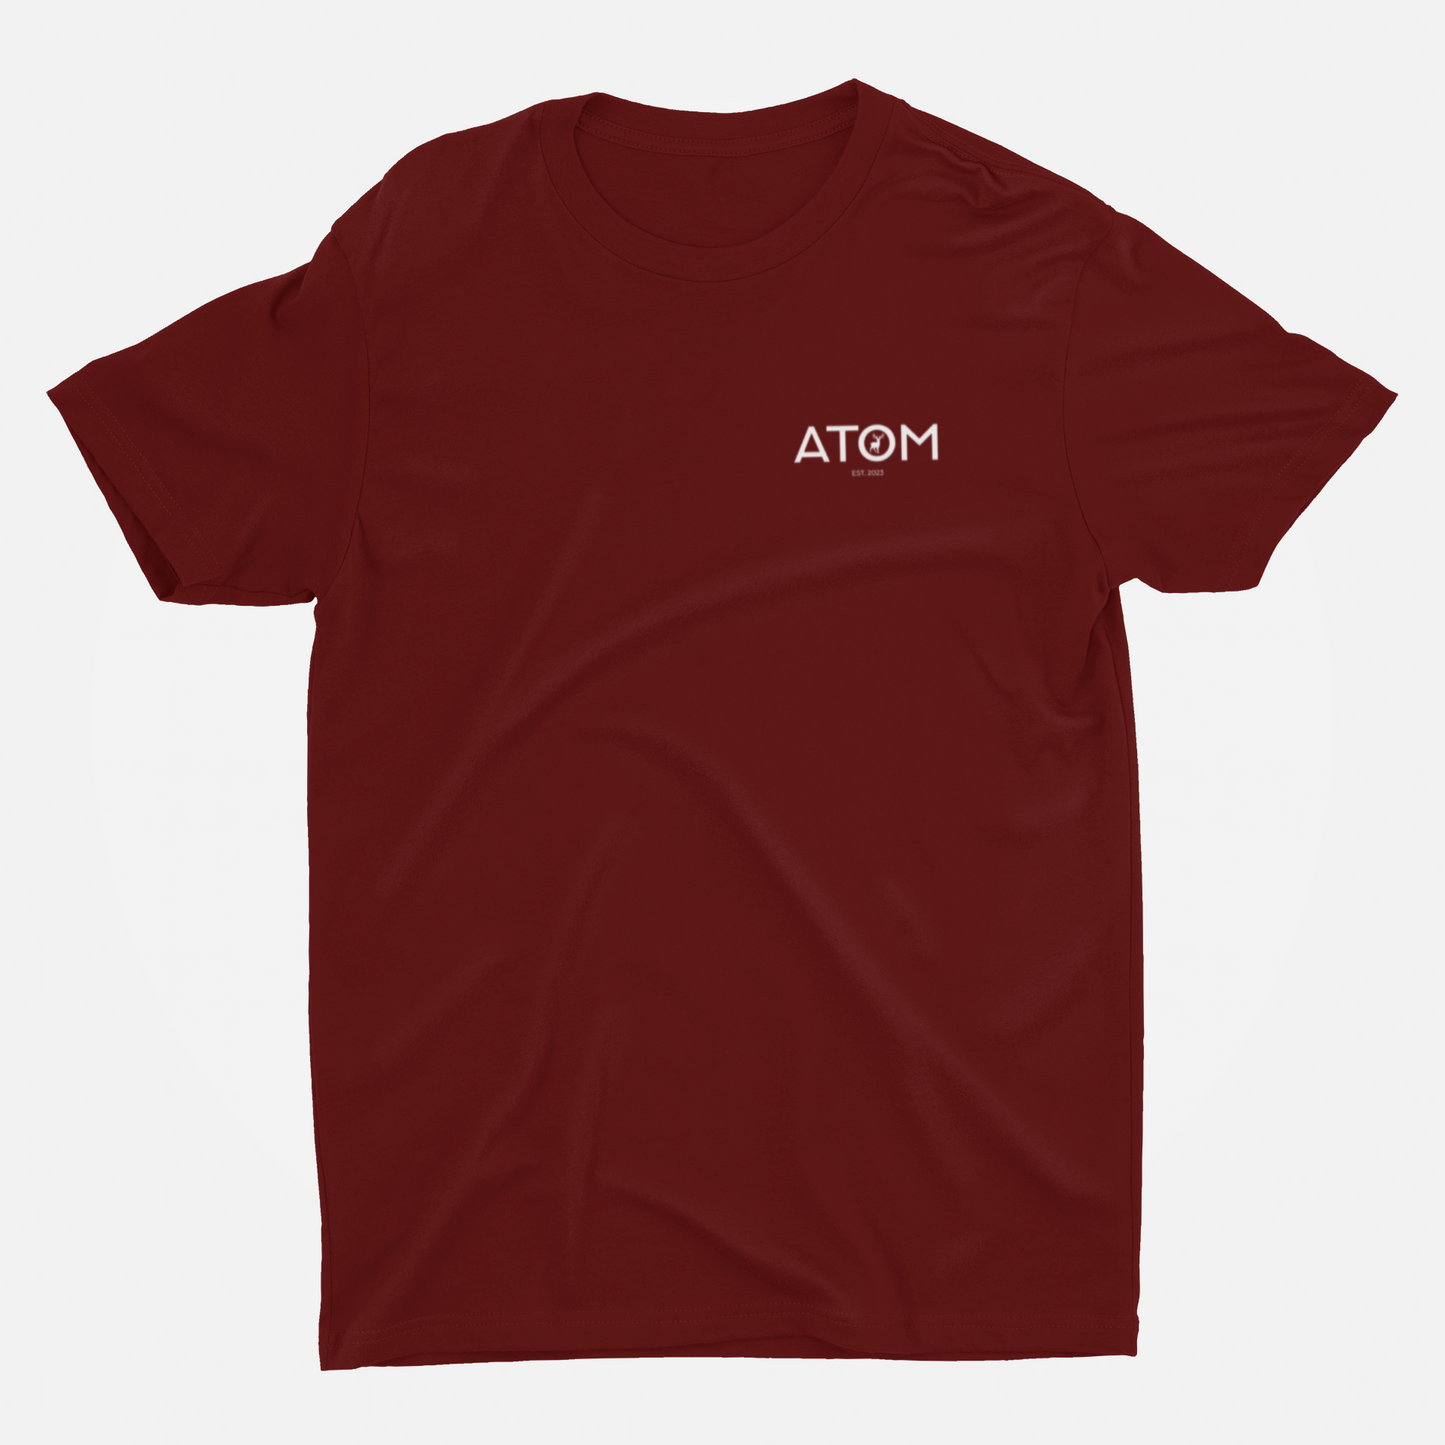 ATOM Logo Basic Marron Round Neck T-Shirt for Men.